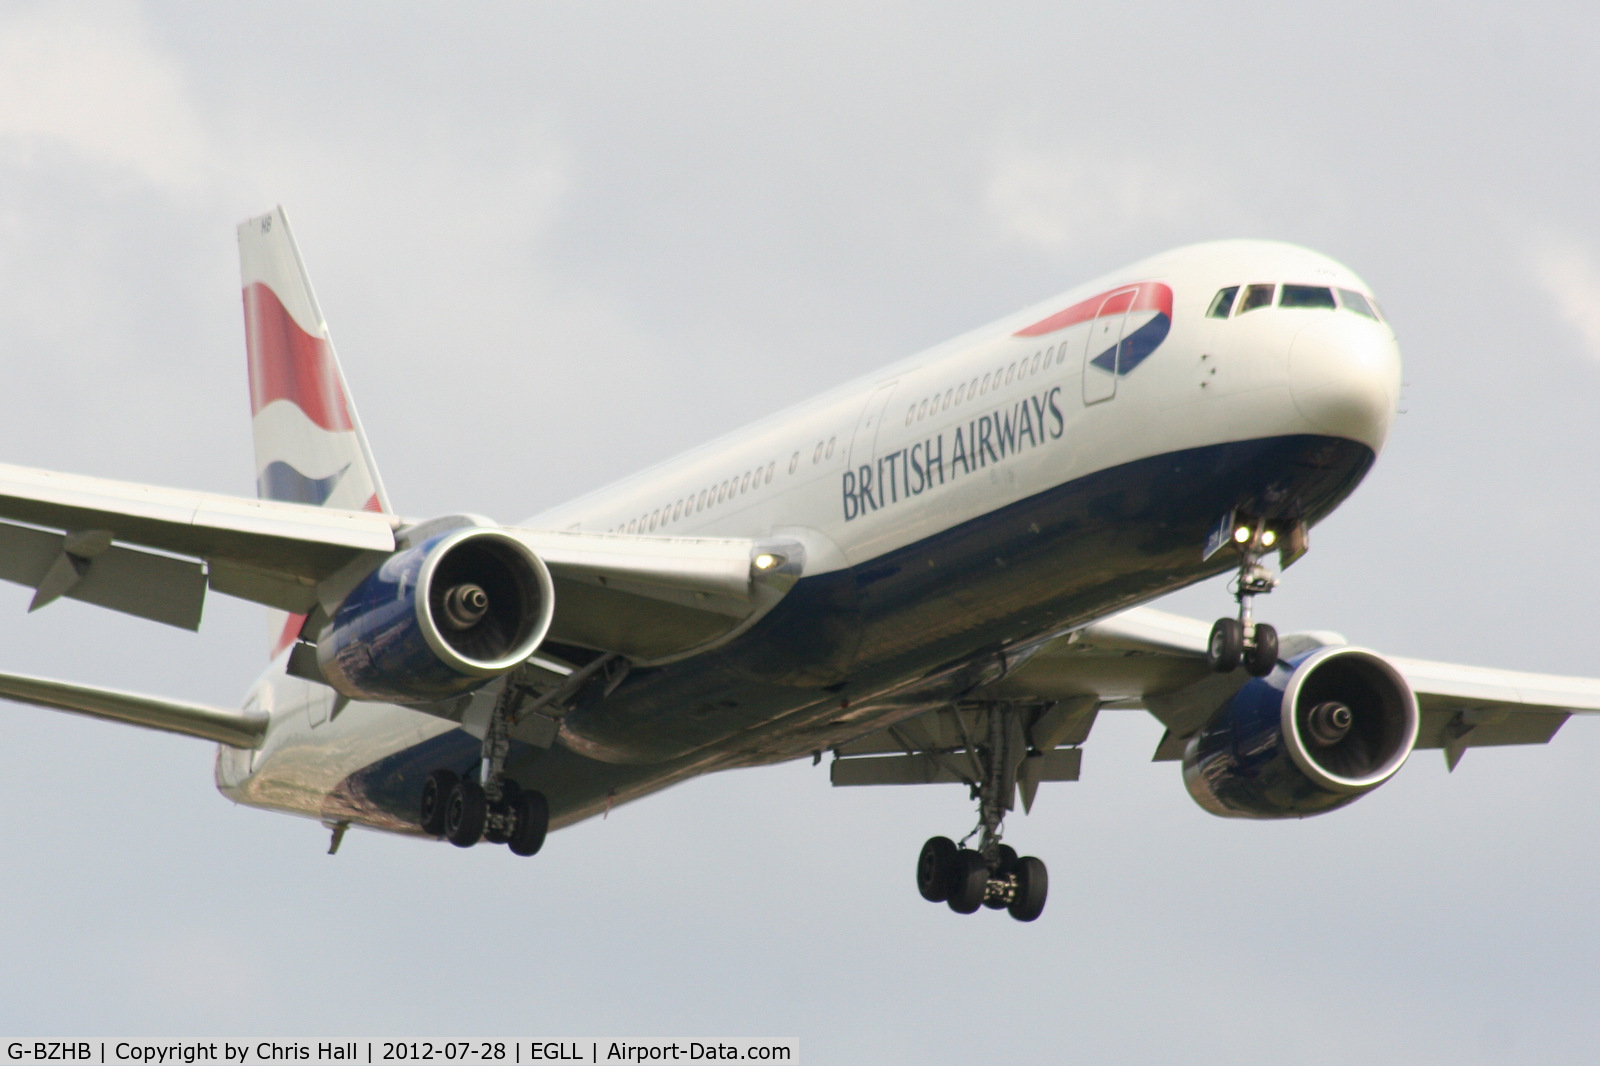 G-BZHB, 1998 Boeing 767-336 C/N 29231, British Airways